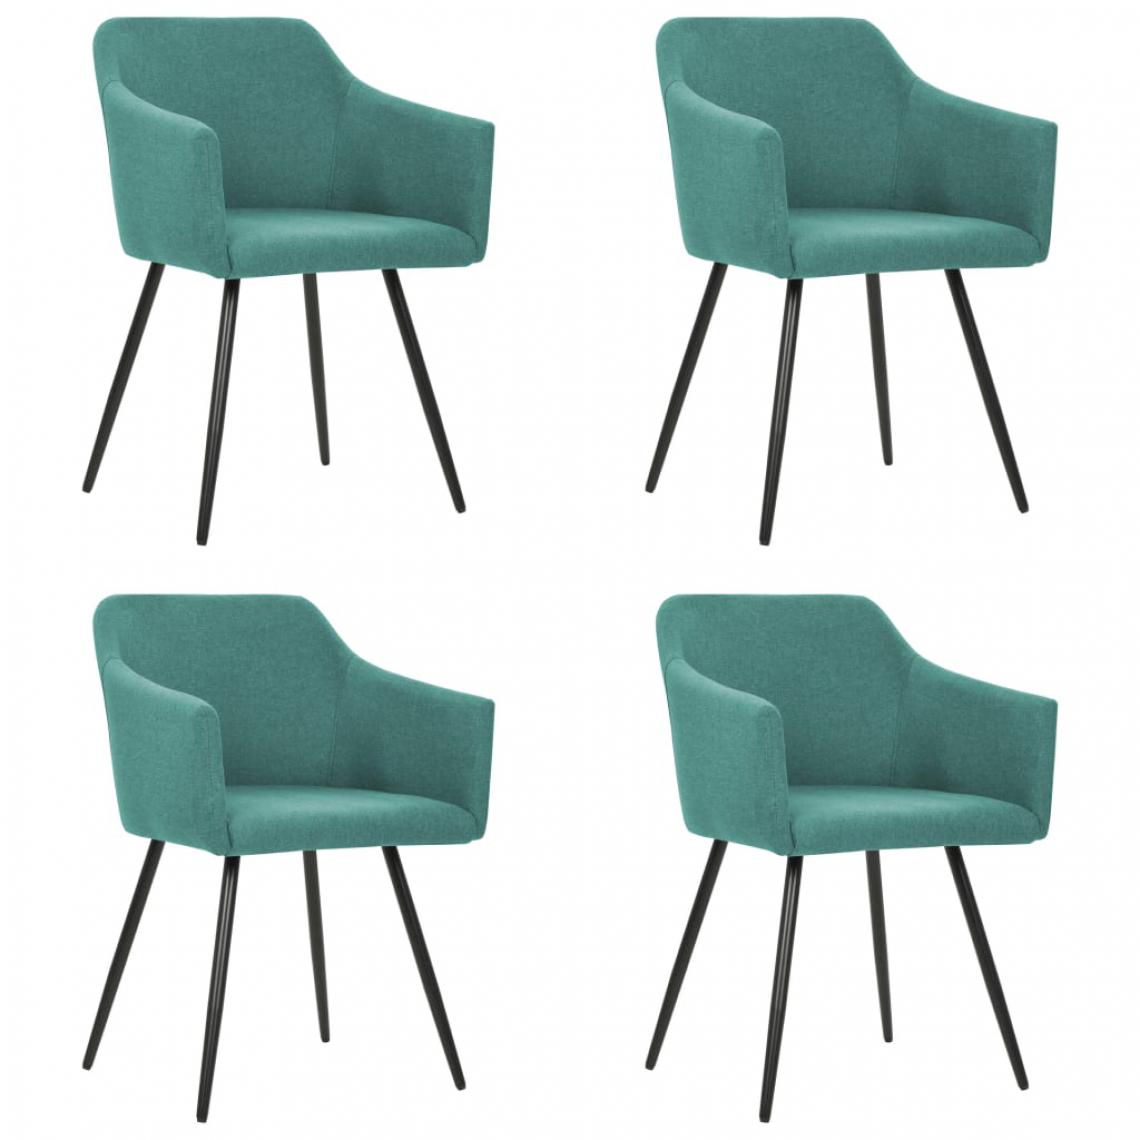 Icaverne - Stylé Fauteuils et chaises categorie Quito Chaises de salle à manger 4 pcs Vert Tissu - Chaises